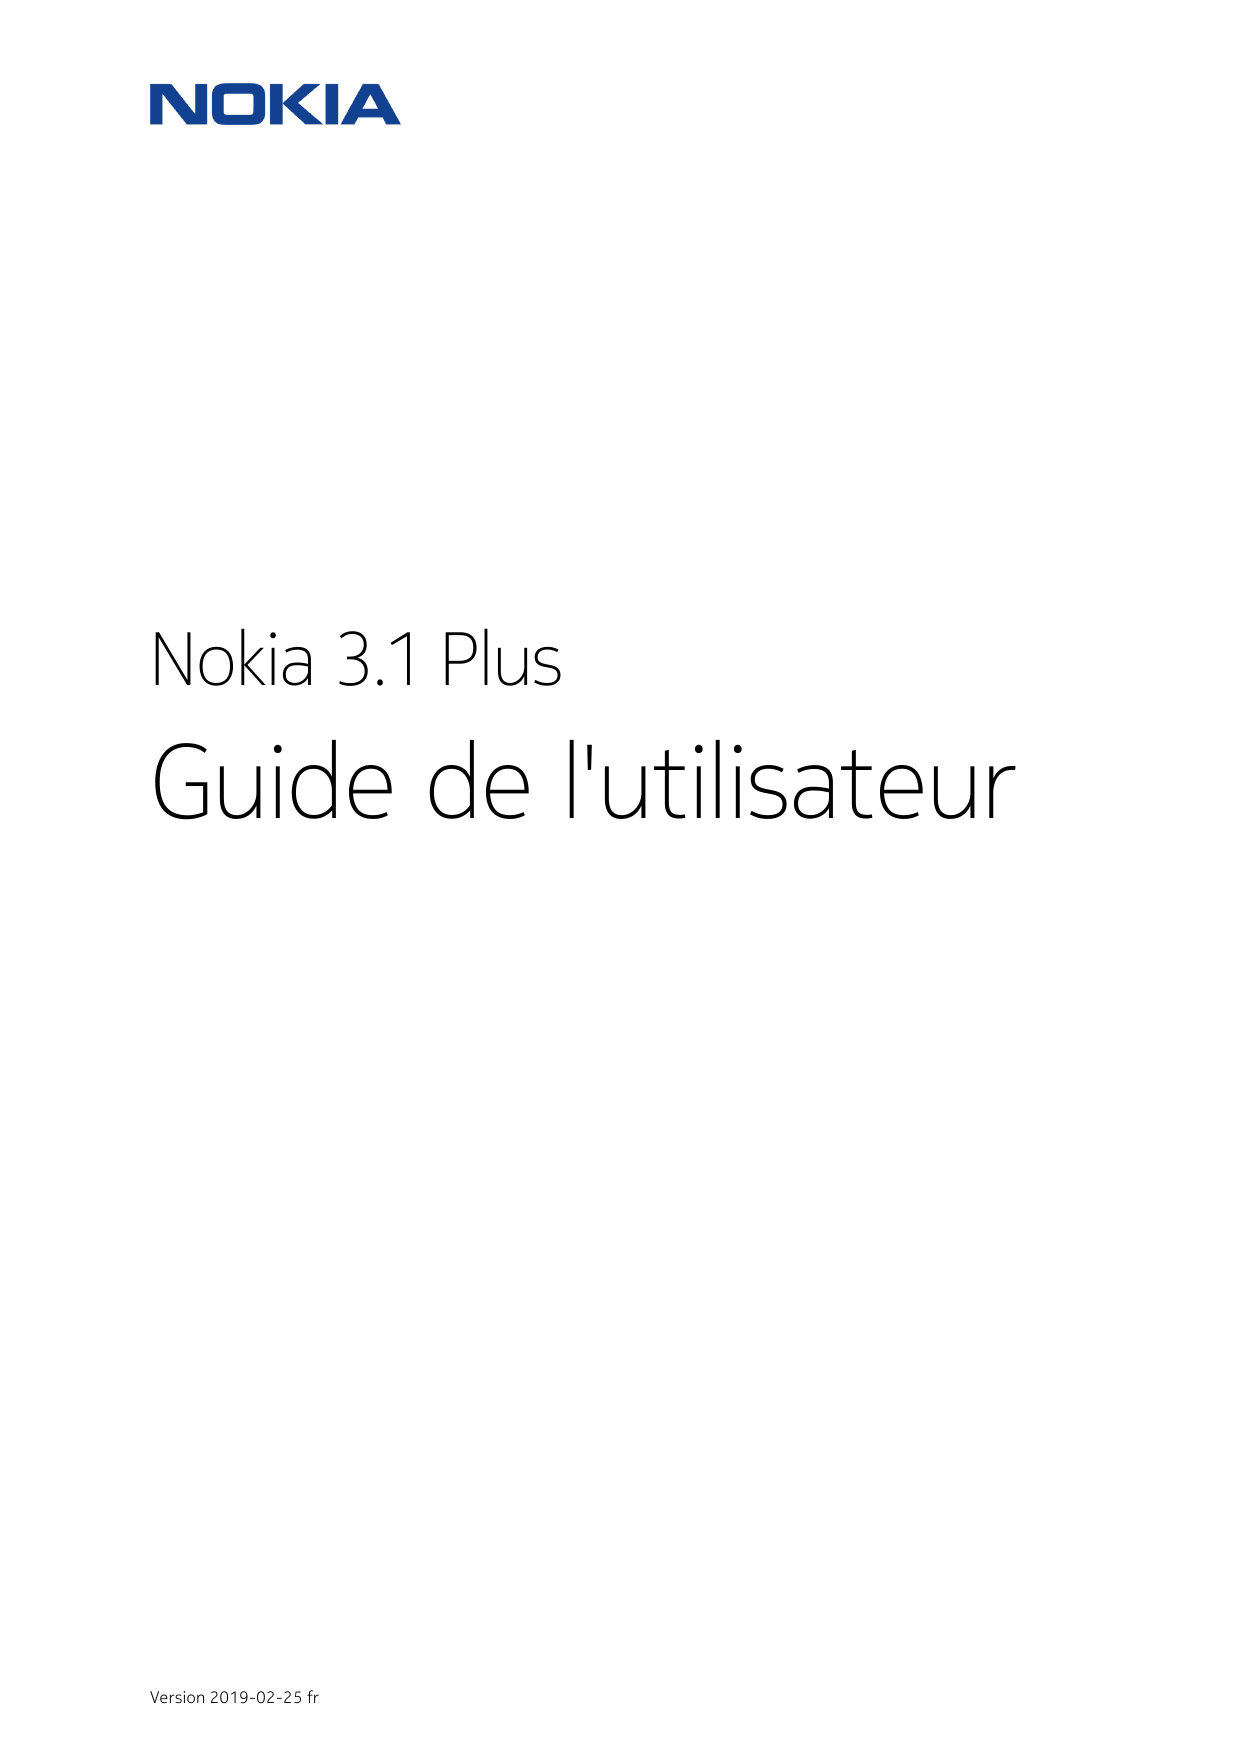 Nokia 3.1 PlusGuide de l'utilisateurVersion 2019-02-25 fr